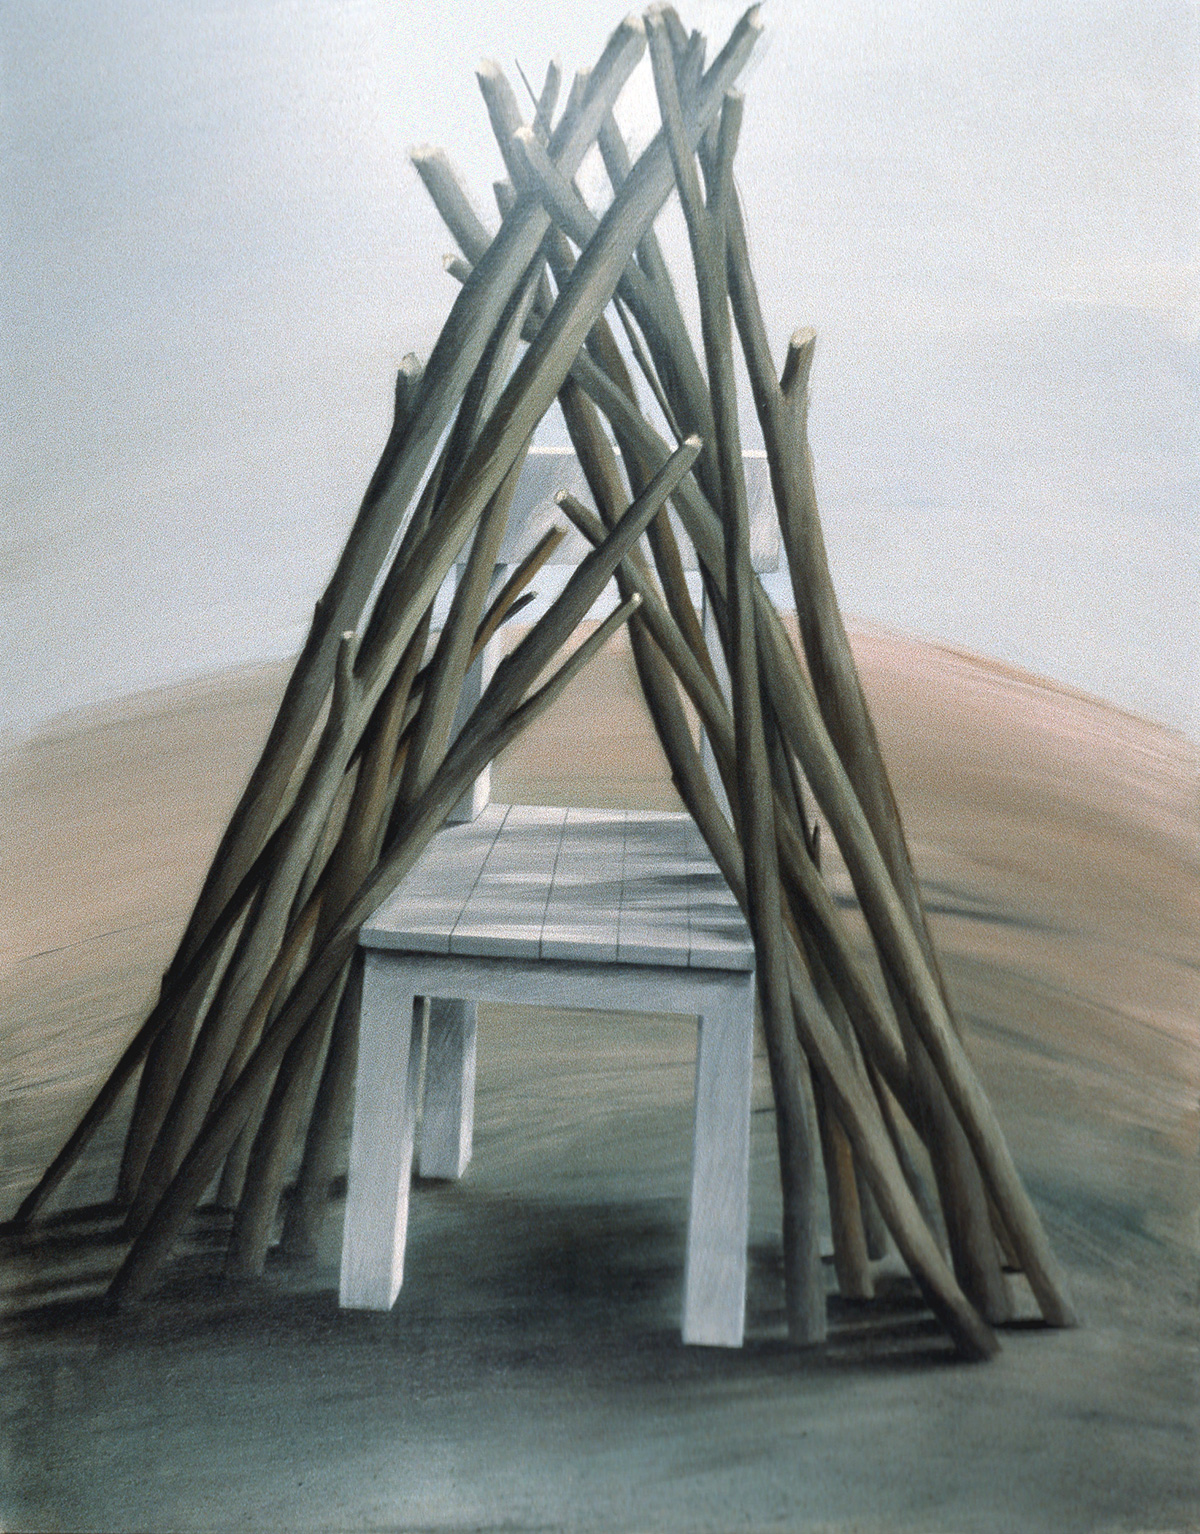 Stuhl mit Stecken, 1982, Acryl auf Leinwand, 110x87cm